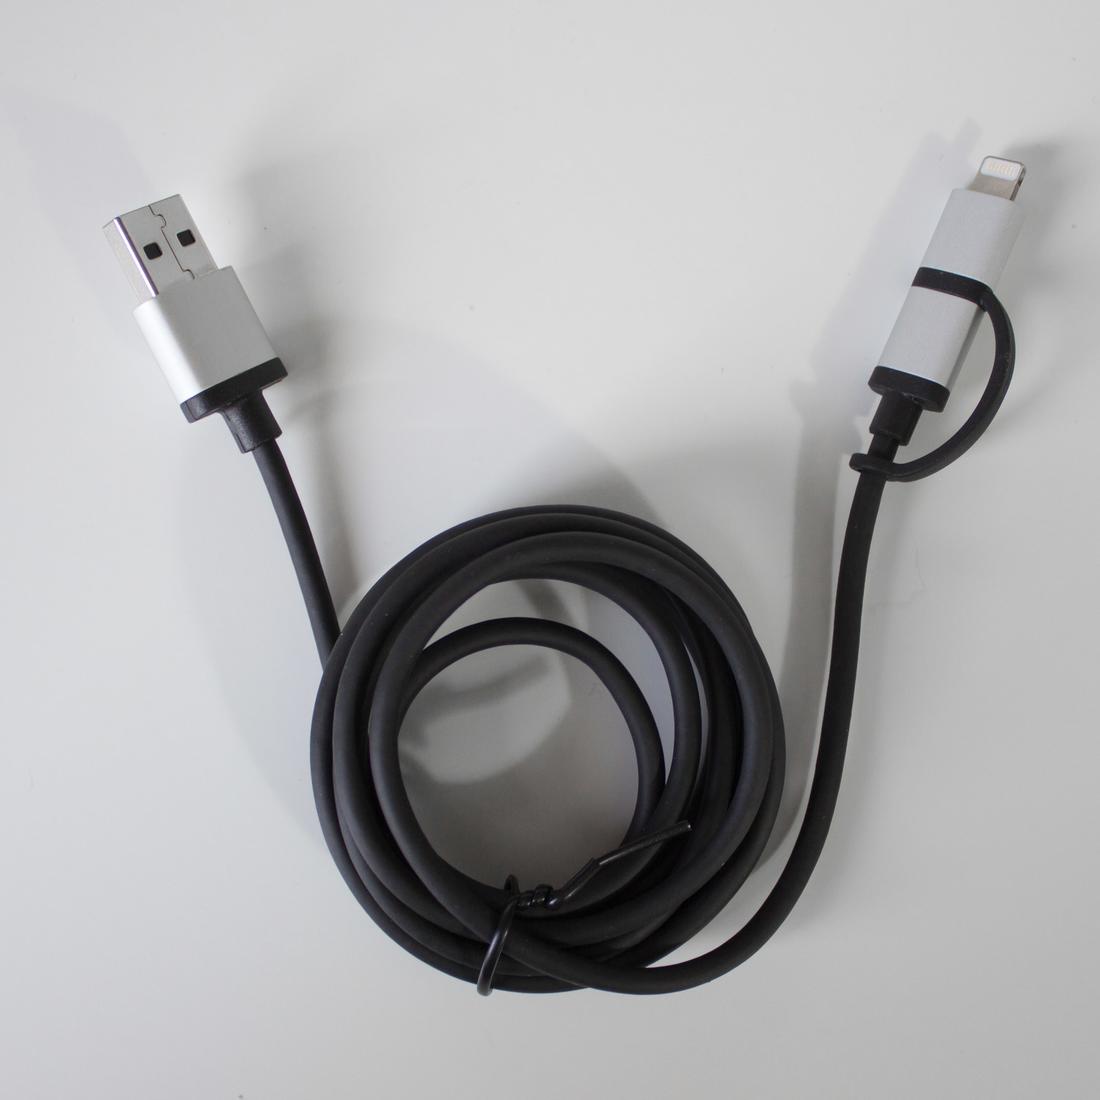 Basics – Verbindungskabel Lightning auf USB-A dunkelgrau 0,9 m MFi-zertifiziertes Ladekabel für iPhone Nylon-umflochten 